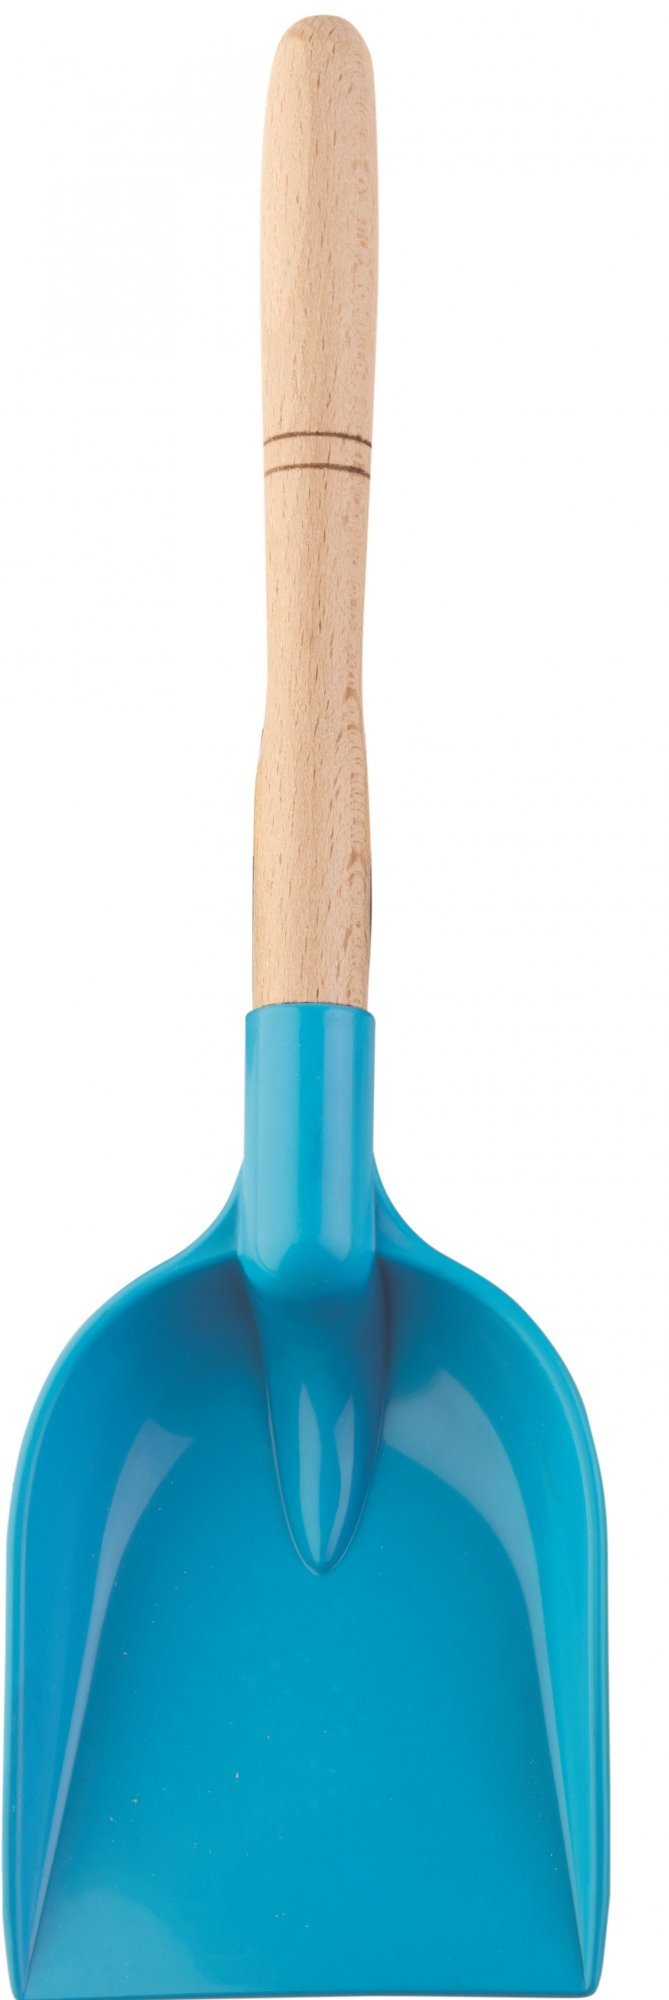 Androni Lopata s dřevěnou násadou - délka 34 cm, modrá